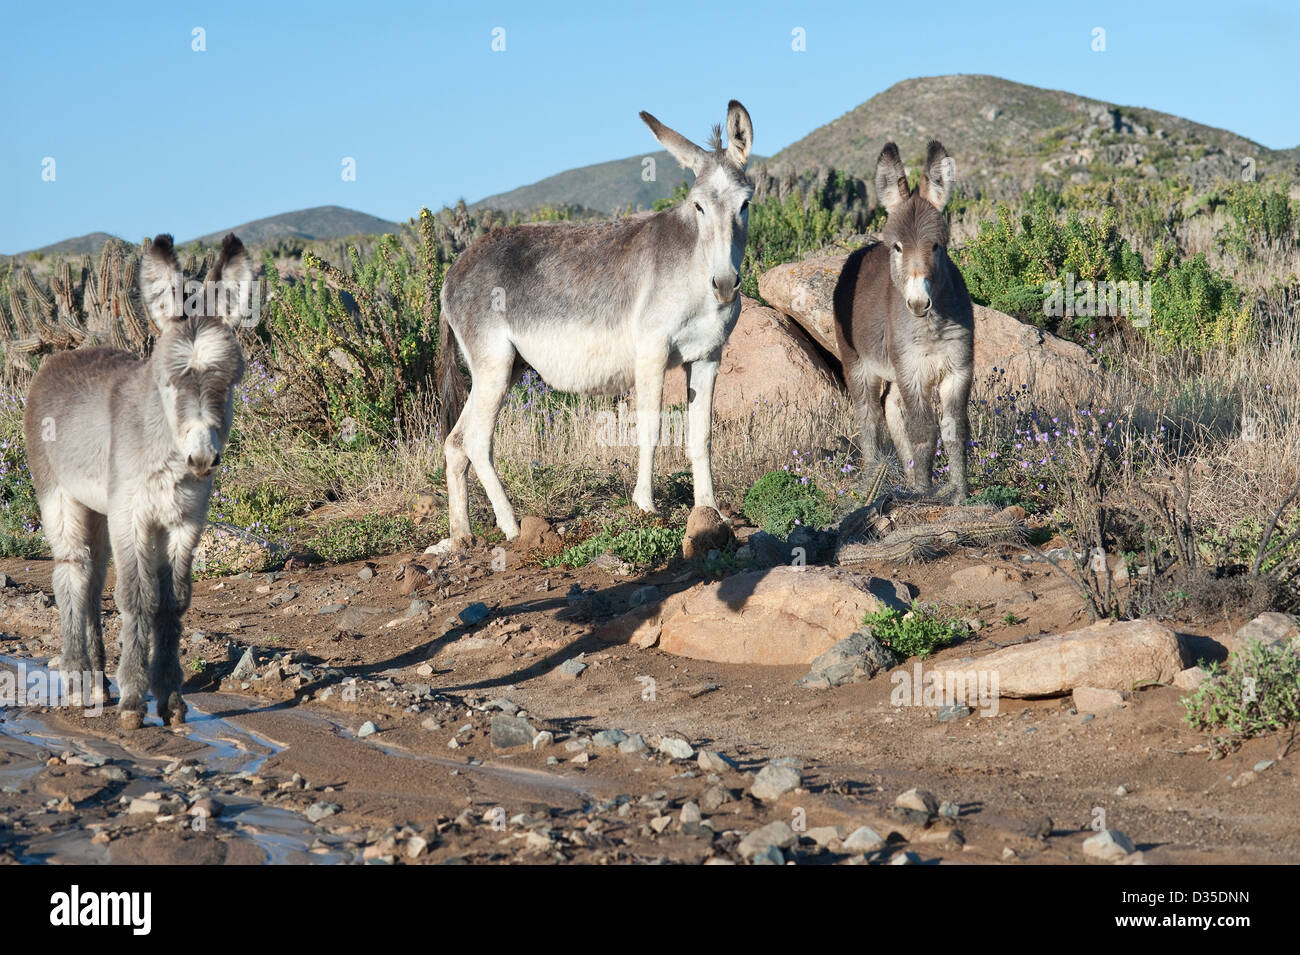 Les ânes sauvages (Equus asinus) et l'alimentation en marche aux environs de Totoral désert d'Atacama Chili Amérique du Sud Banque D'Images